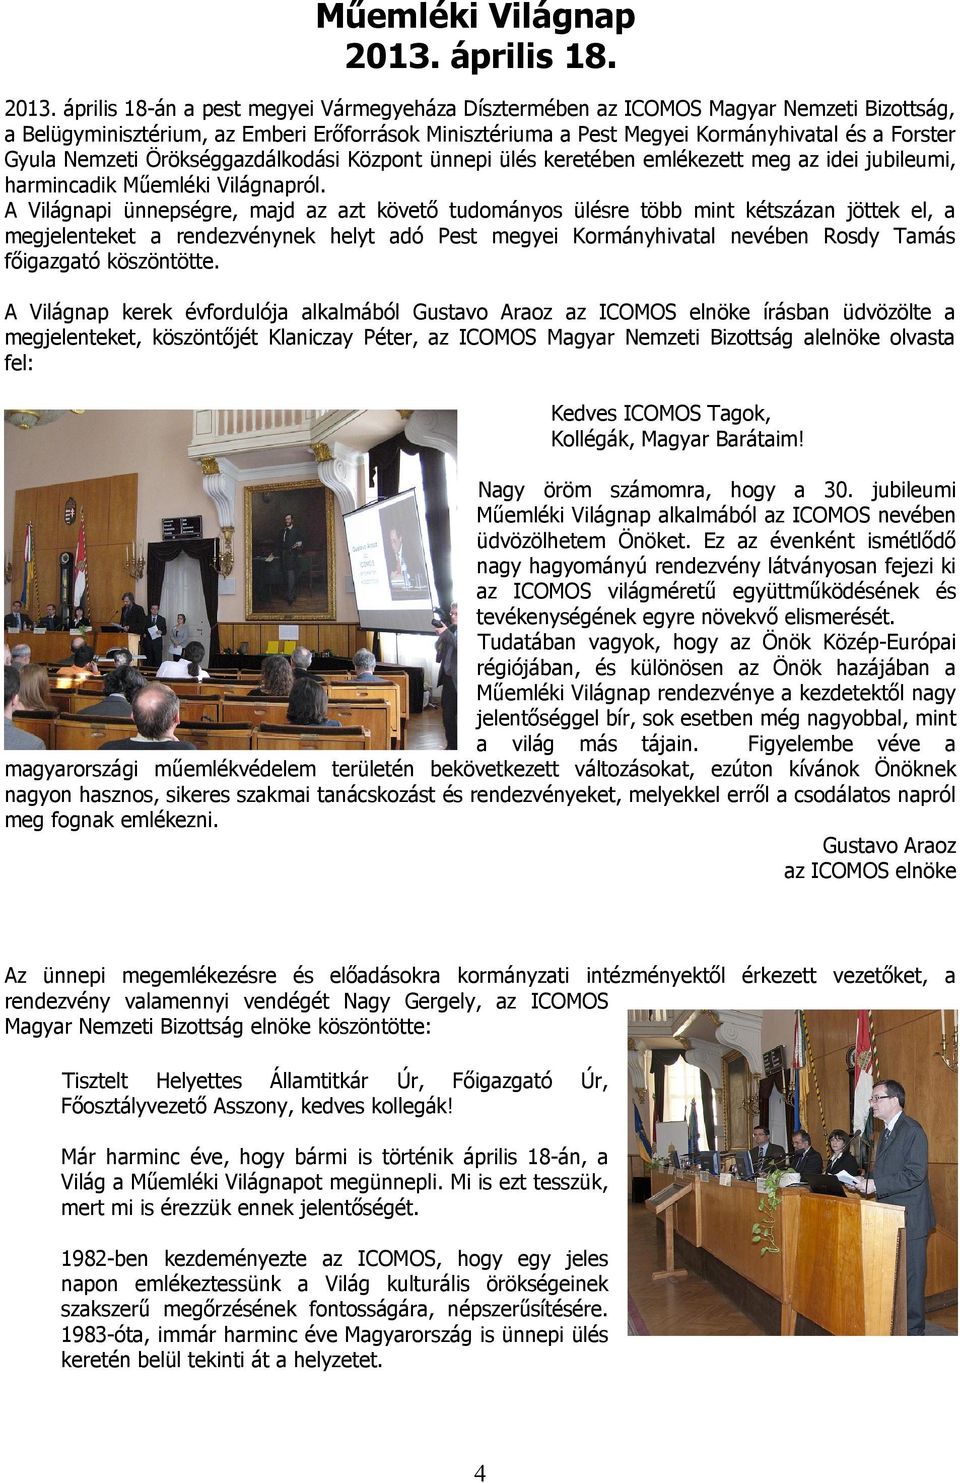 április 18-án a pest megyei Vármegyeháza Dísztermében az ICOMOS Magyar Nemzeti Bizottság, a Belügyminisztérium, az Emberi Erőforrások Minisztériuma a Pest Megyei Kormányhivatal és a Forster Gyula